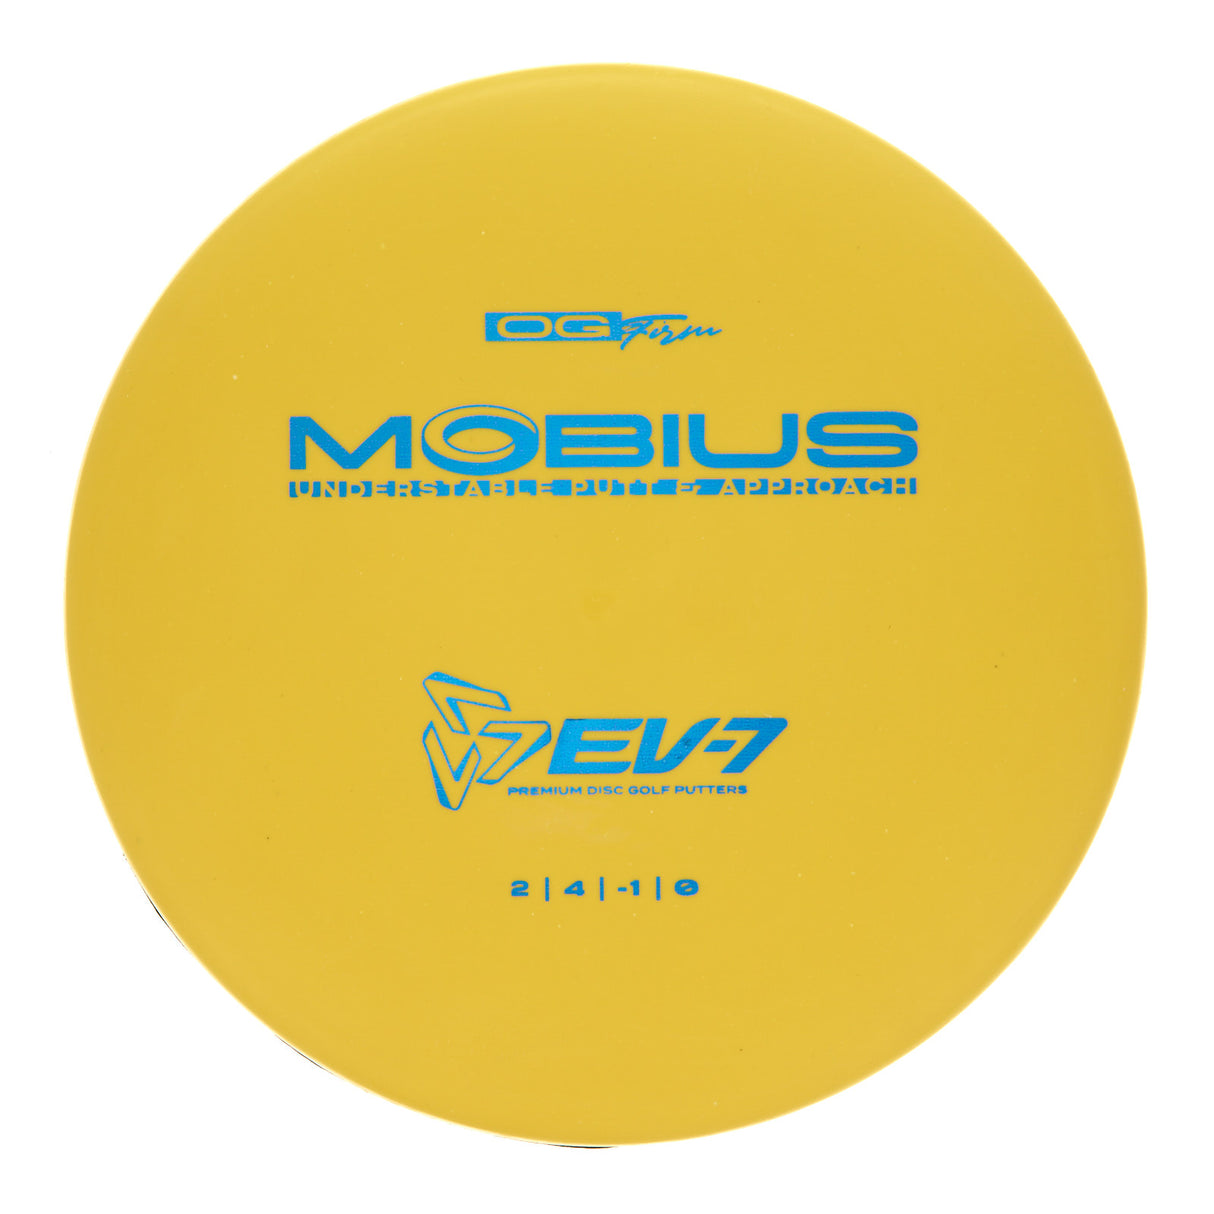 EV-7 Möbius - OG Firm 176g | Style 0001